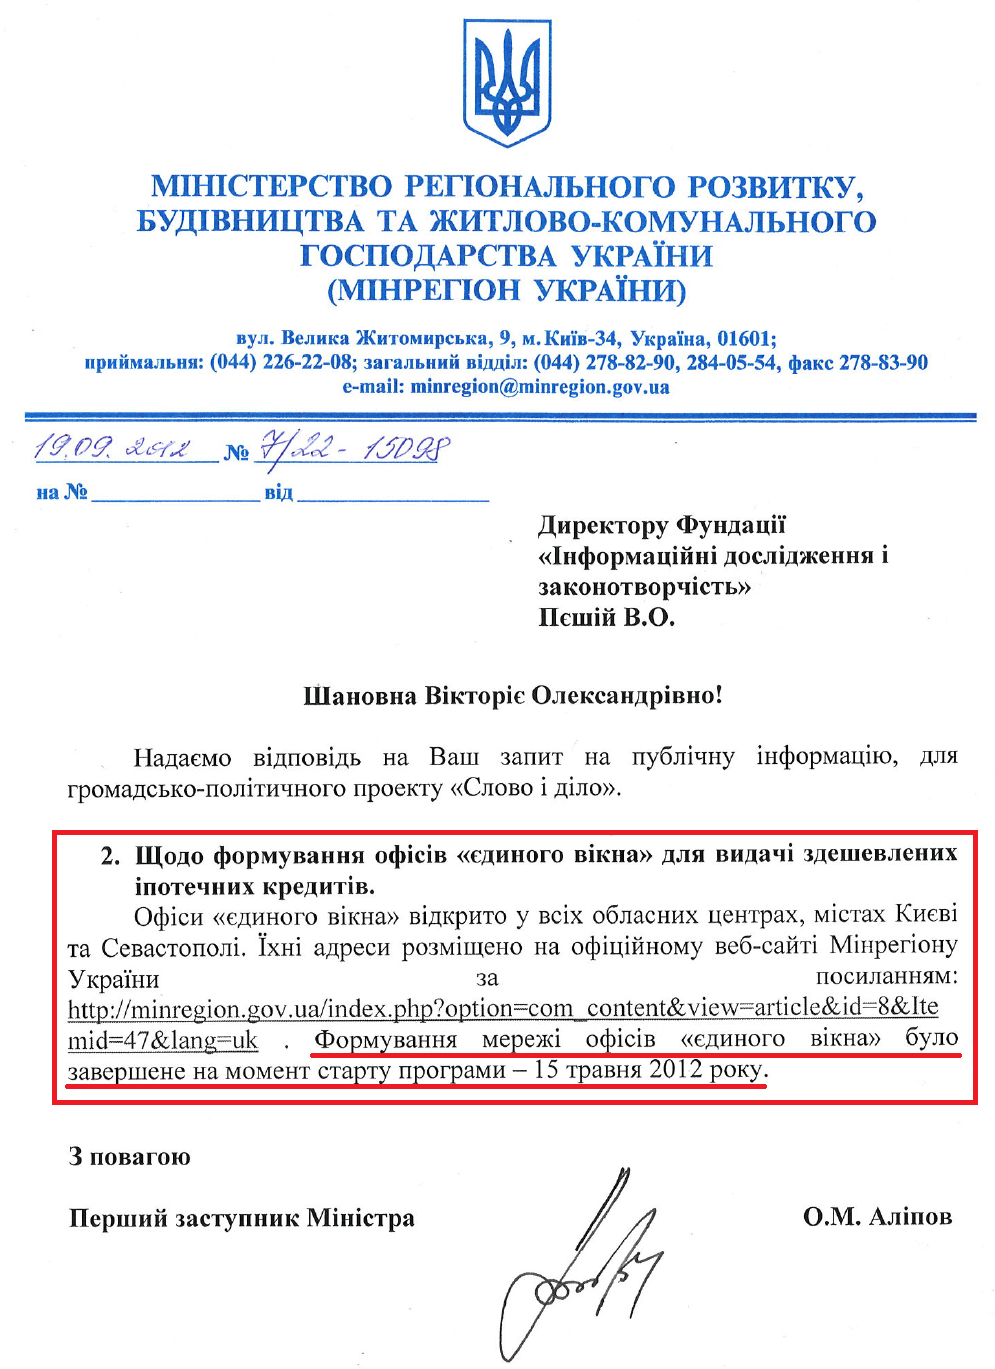 Лист Першого заступника Міністра регіонального розвитку, будівництва та ЖКГ України О.М.Аліпова від 19 вересня 2012 року